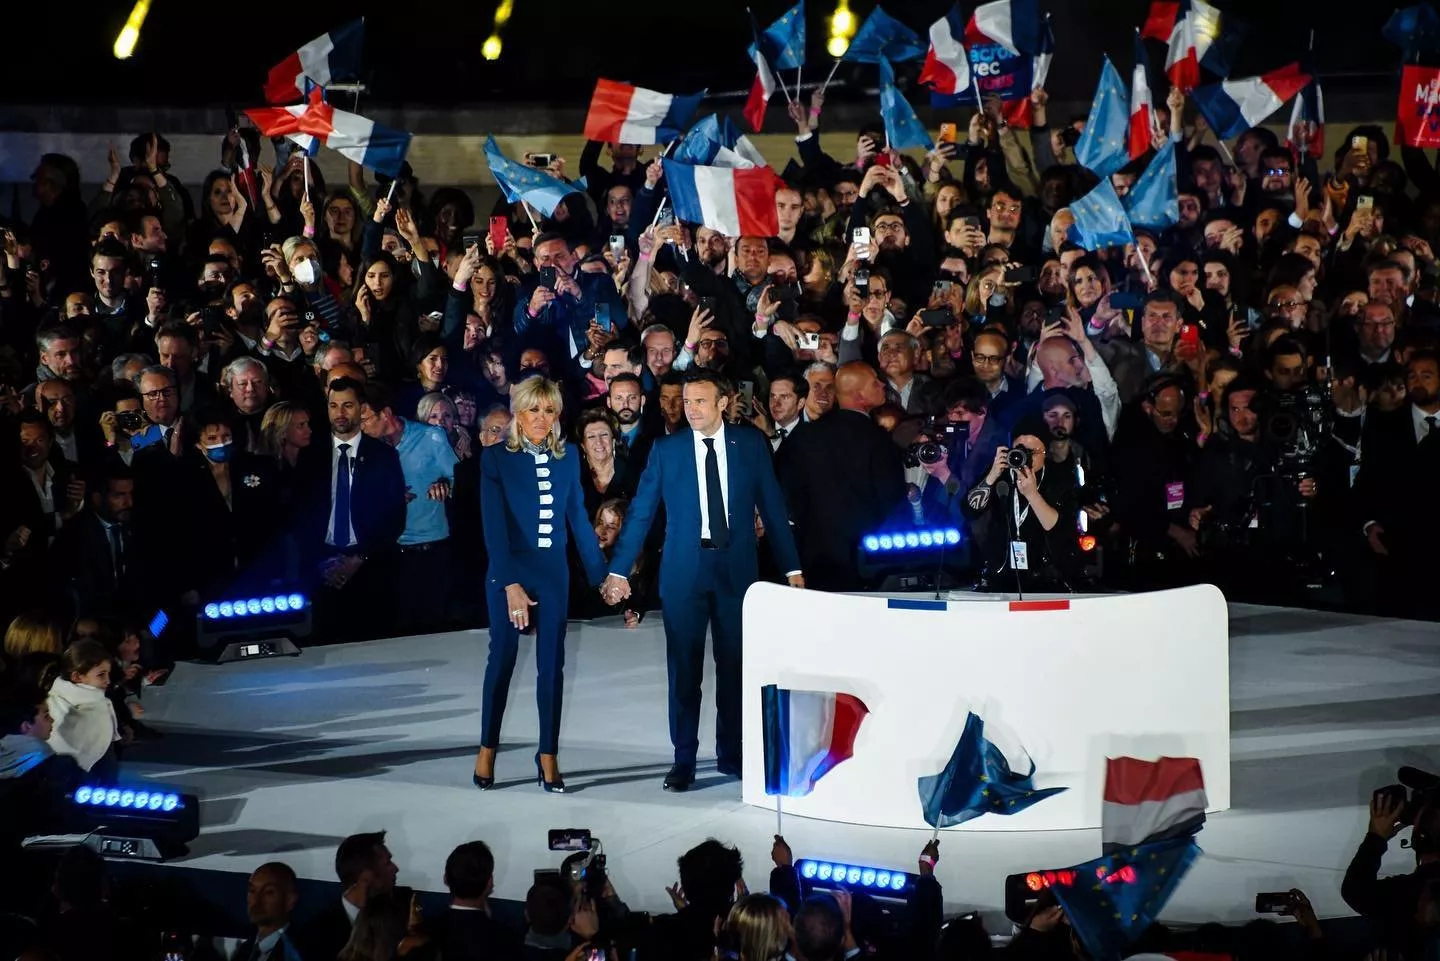 بريجيت ماكرون تنسّق لوكها مع زوجها إيمانويل ماكرون بعد فوزه بالرئاسة الفرنسية